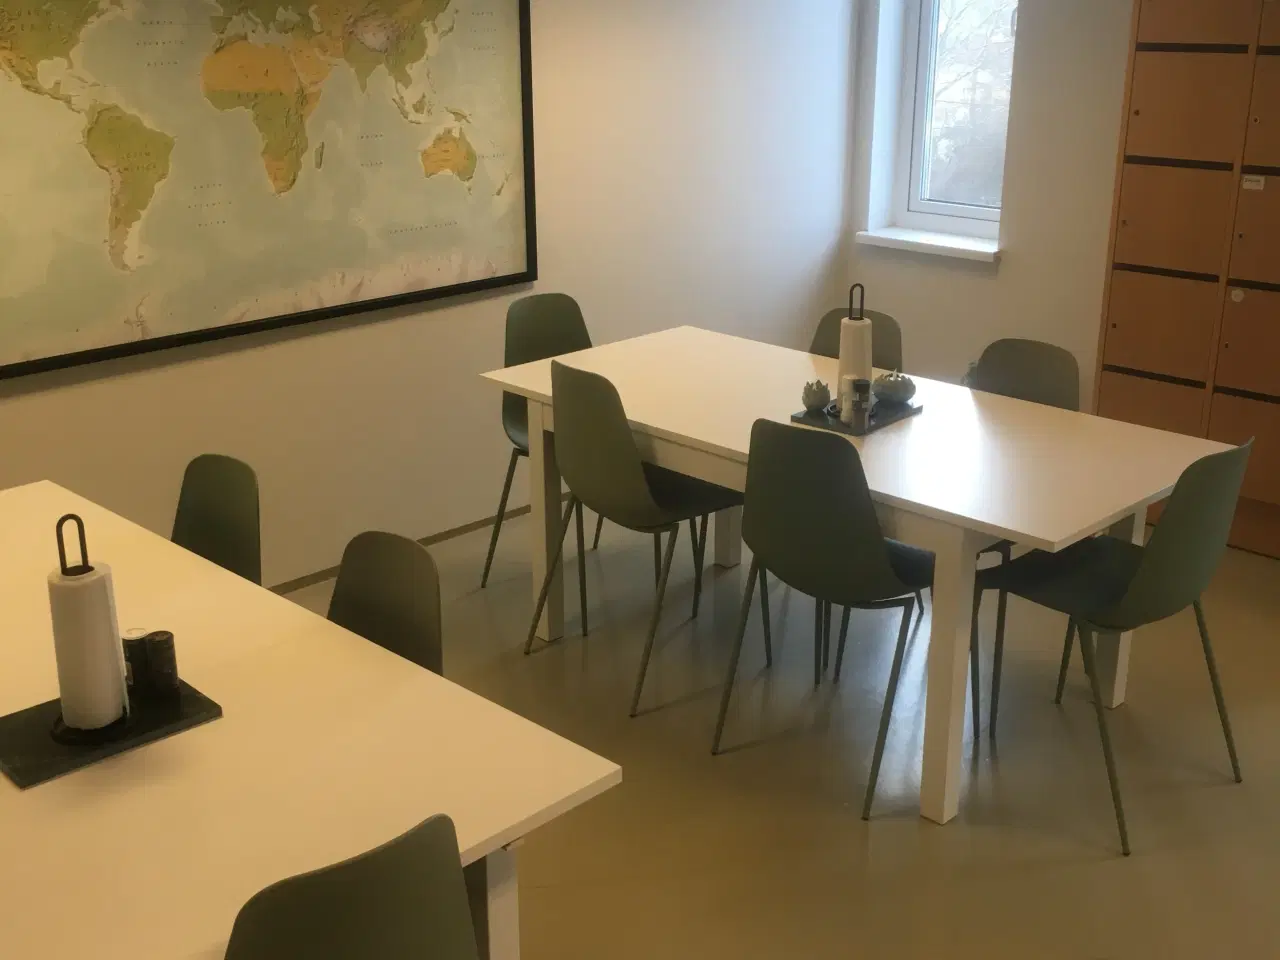 Billede 6 - Indus21 - Eget kontor i Roskildes største kontorfællesskab?